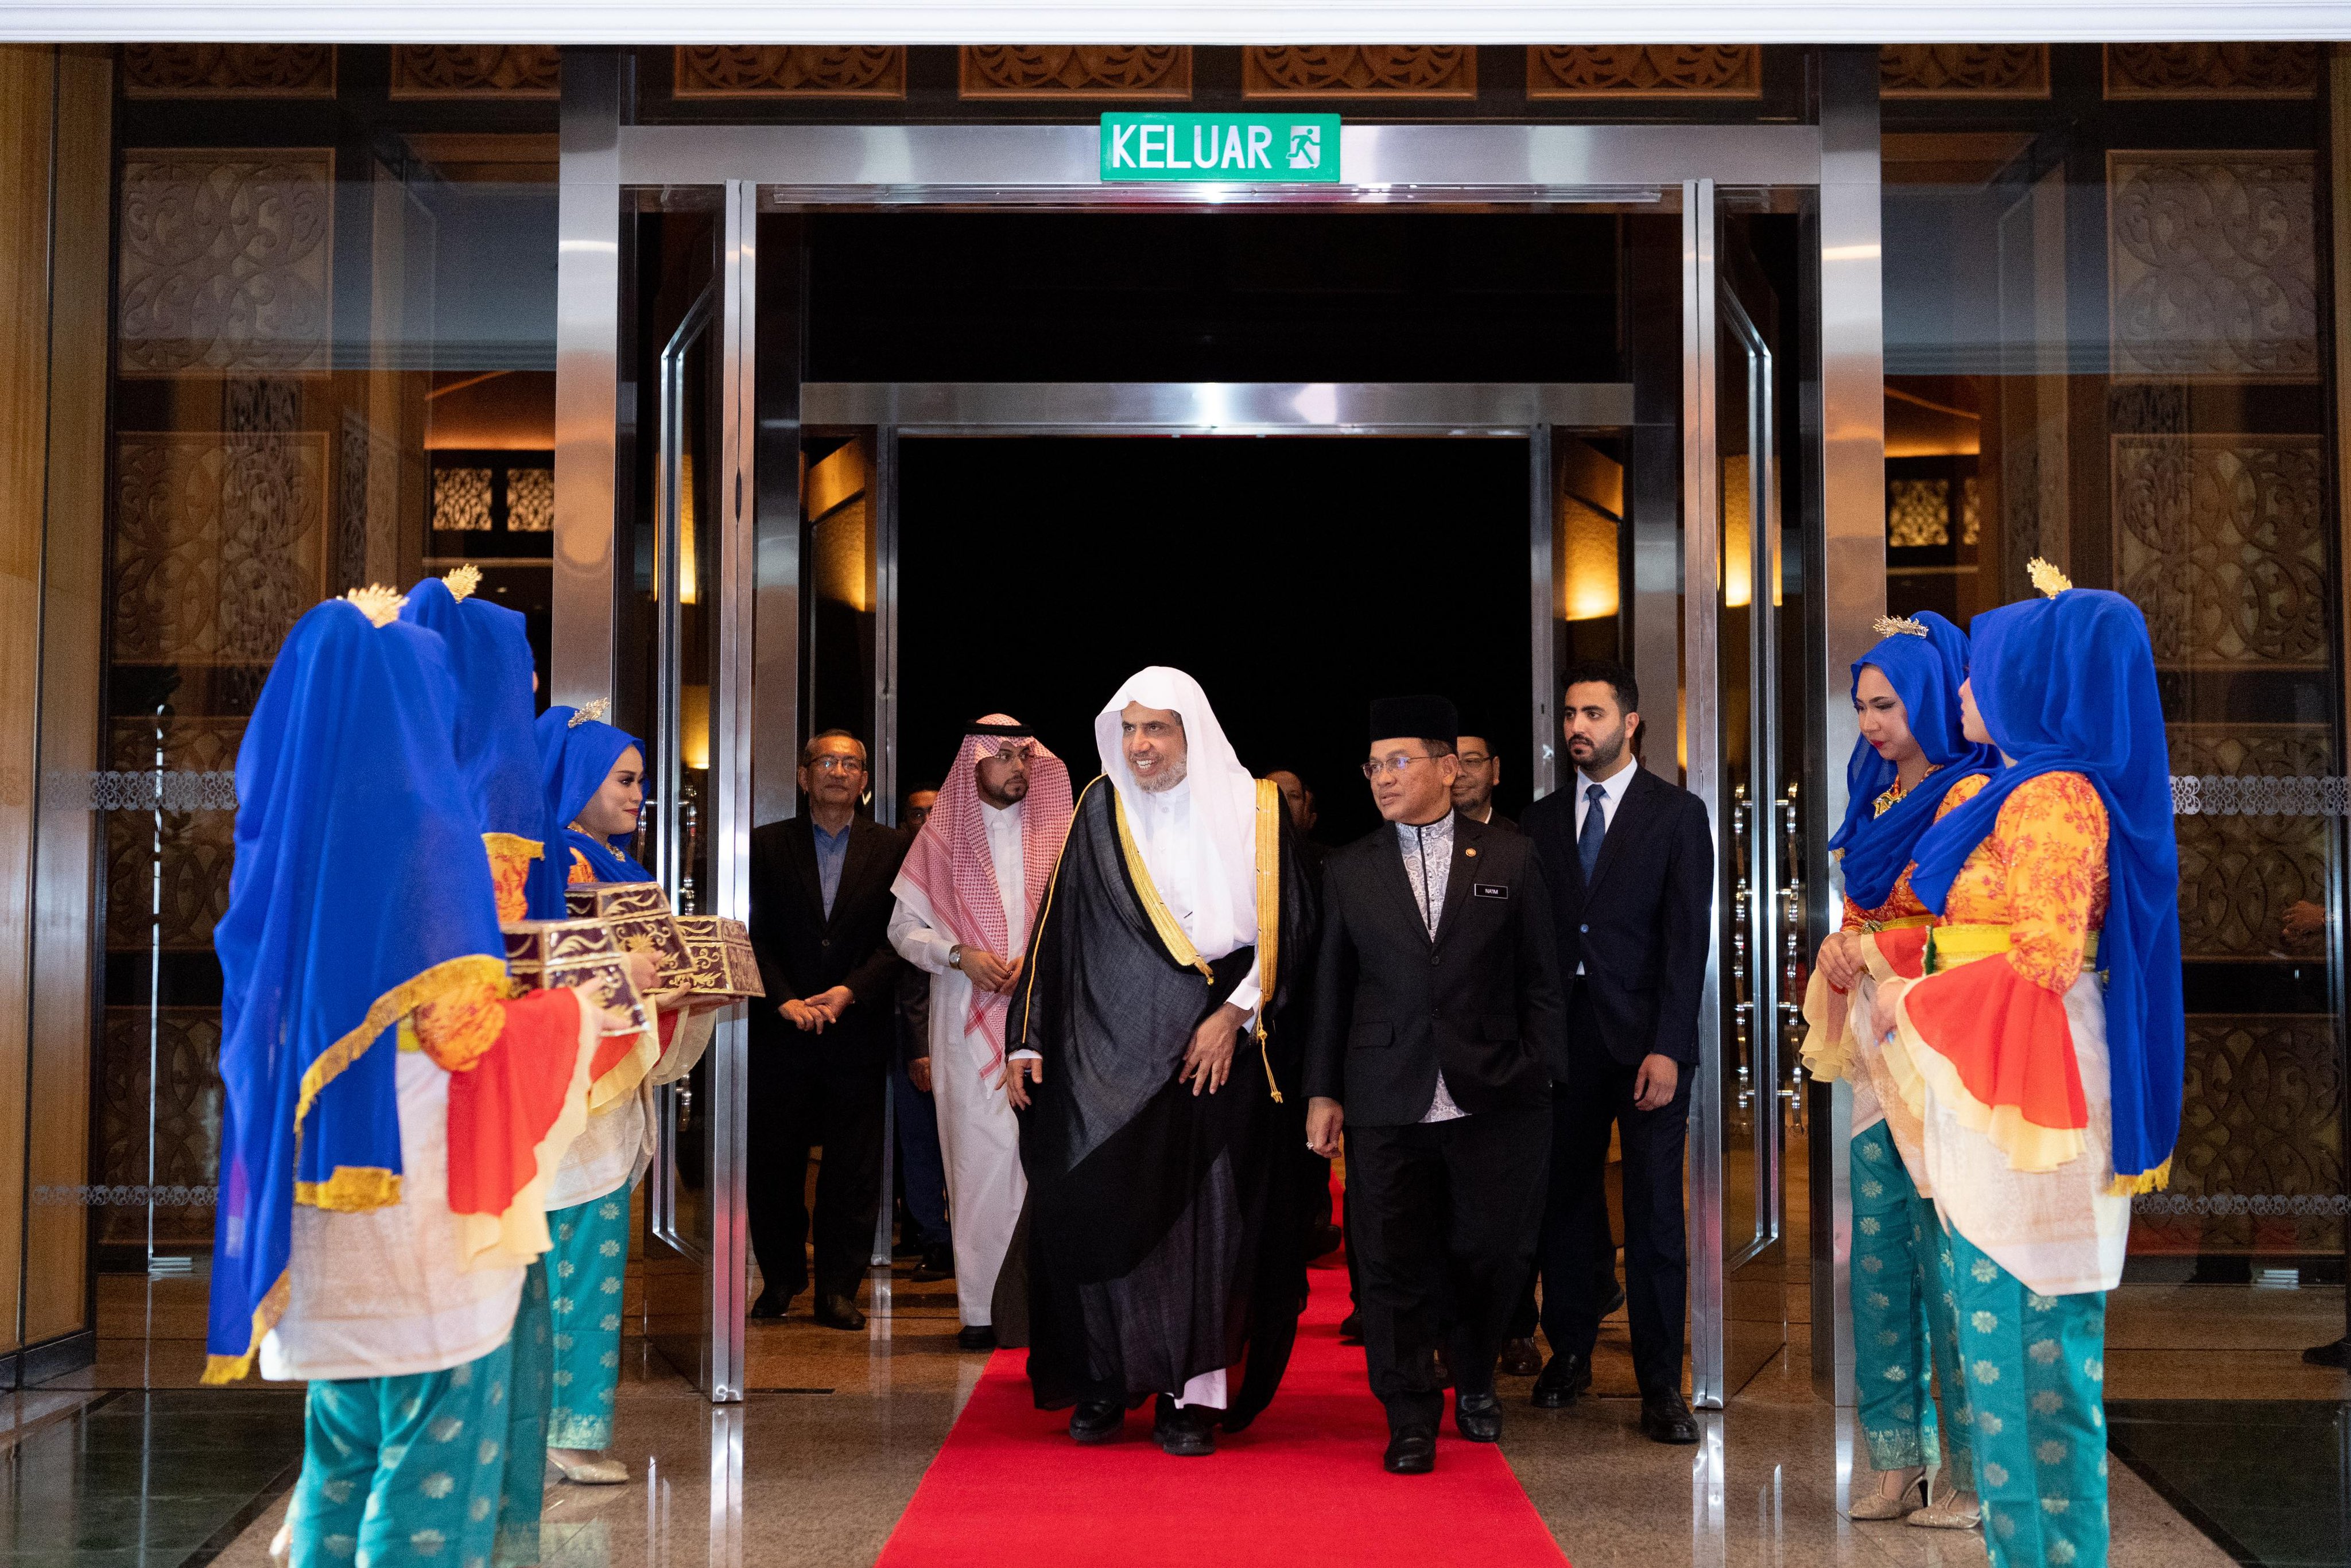 جناب دبیر کل، آقای دکتر شیخ محمد العیسی اکنون وارد پایتخت کوالالامپور شد که مورد استقبال جناب وزیر به ریاست هیئت دولت